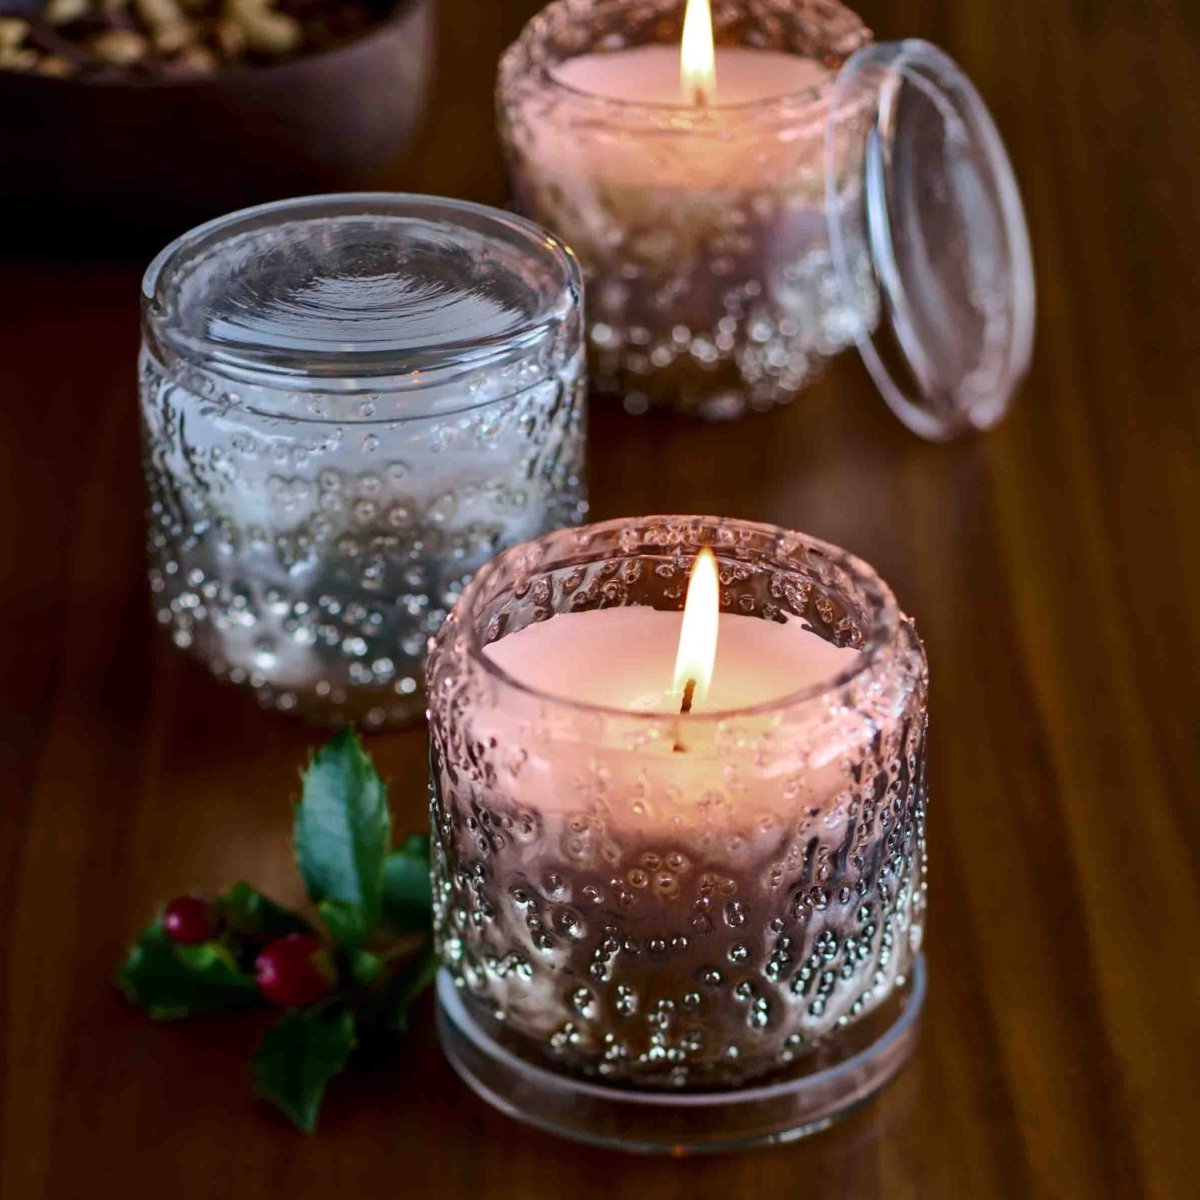 Calytrix - 8oz Glass Candle Jar with Floral Sunburst Texture